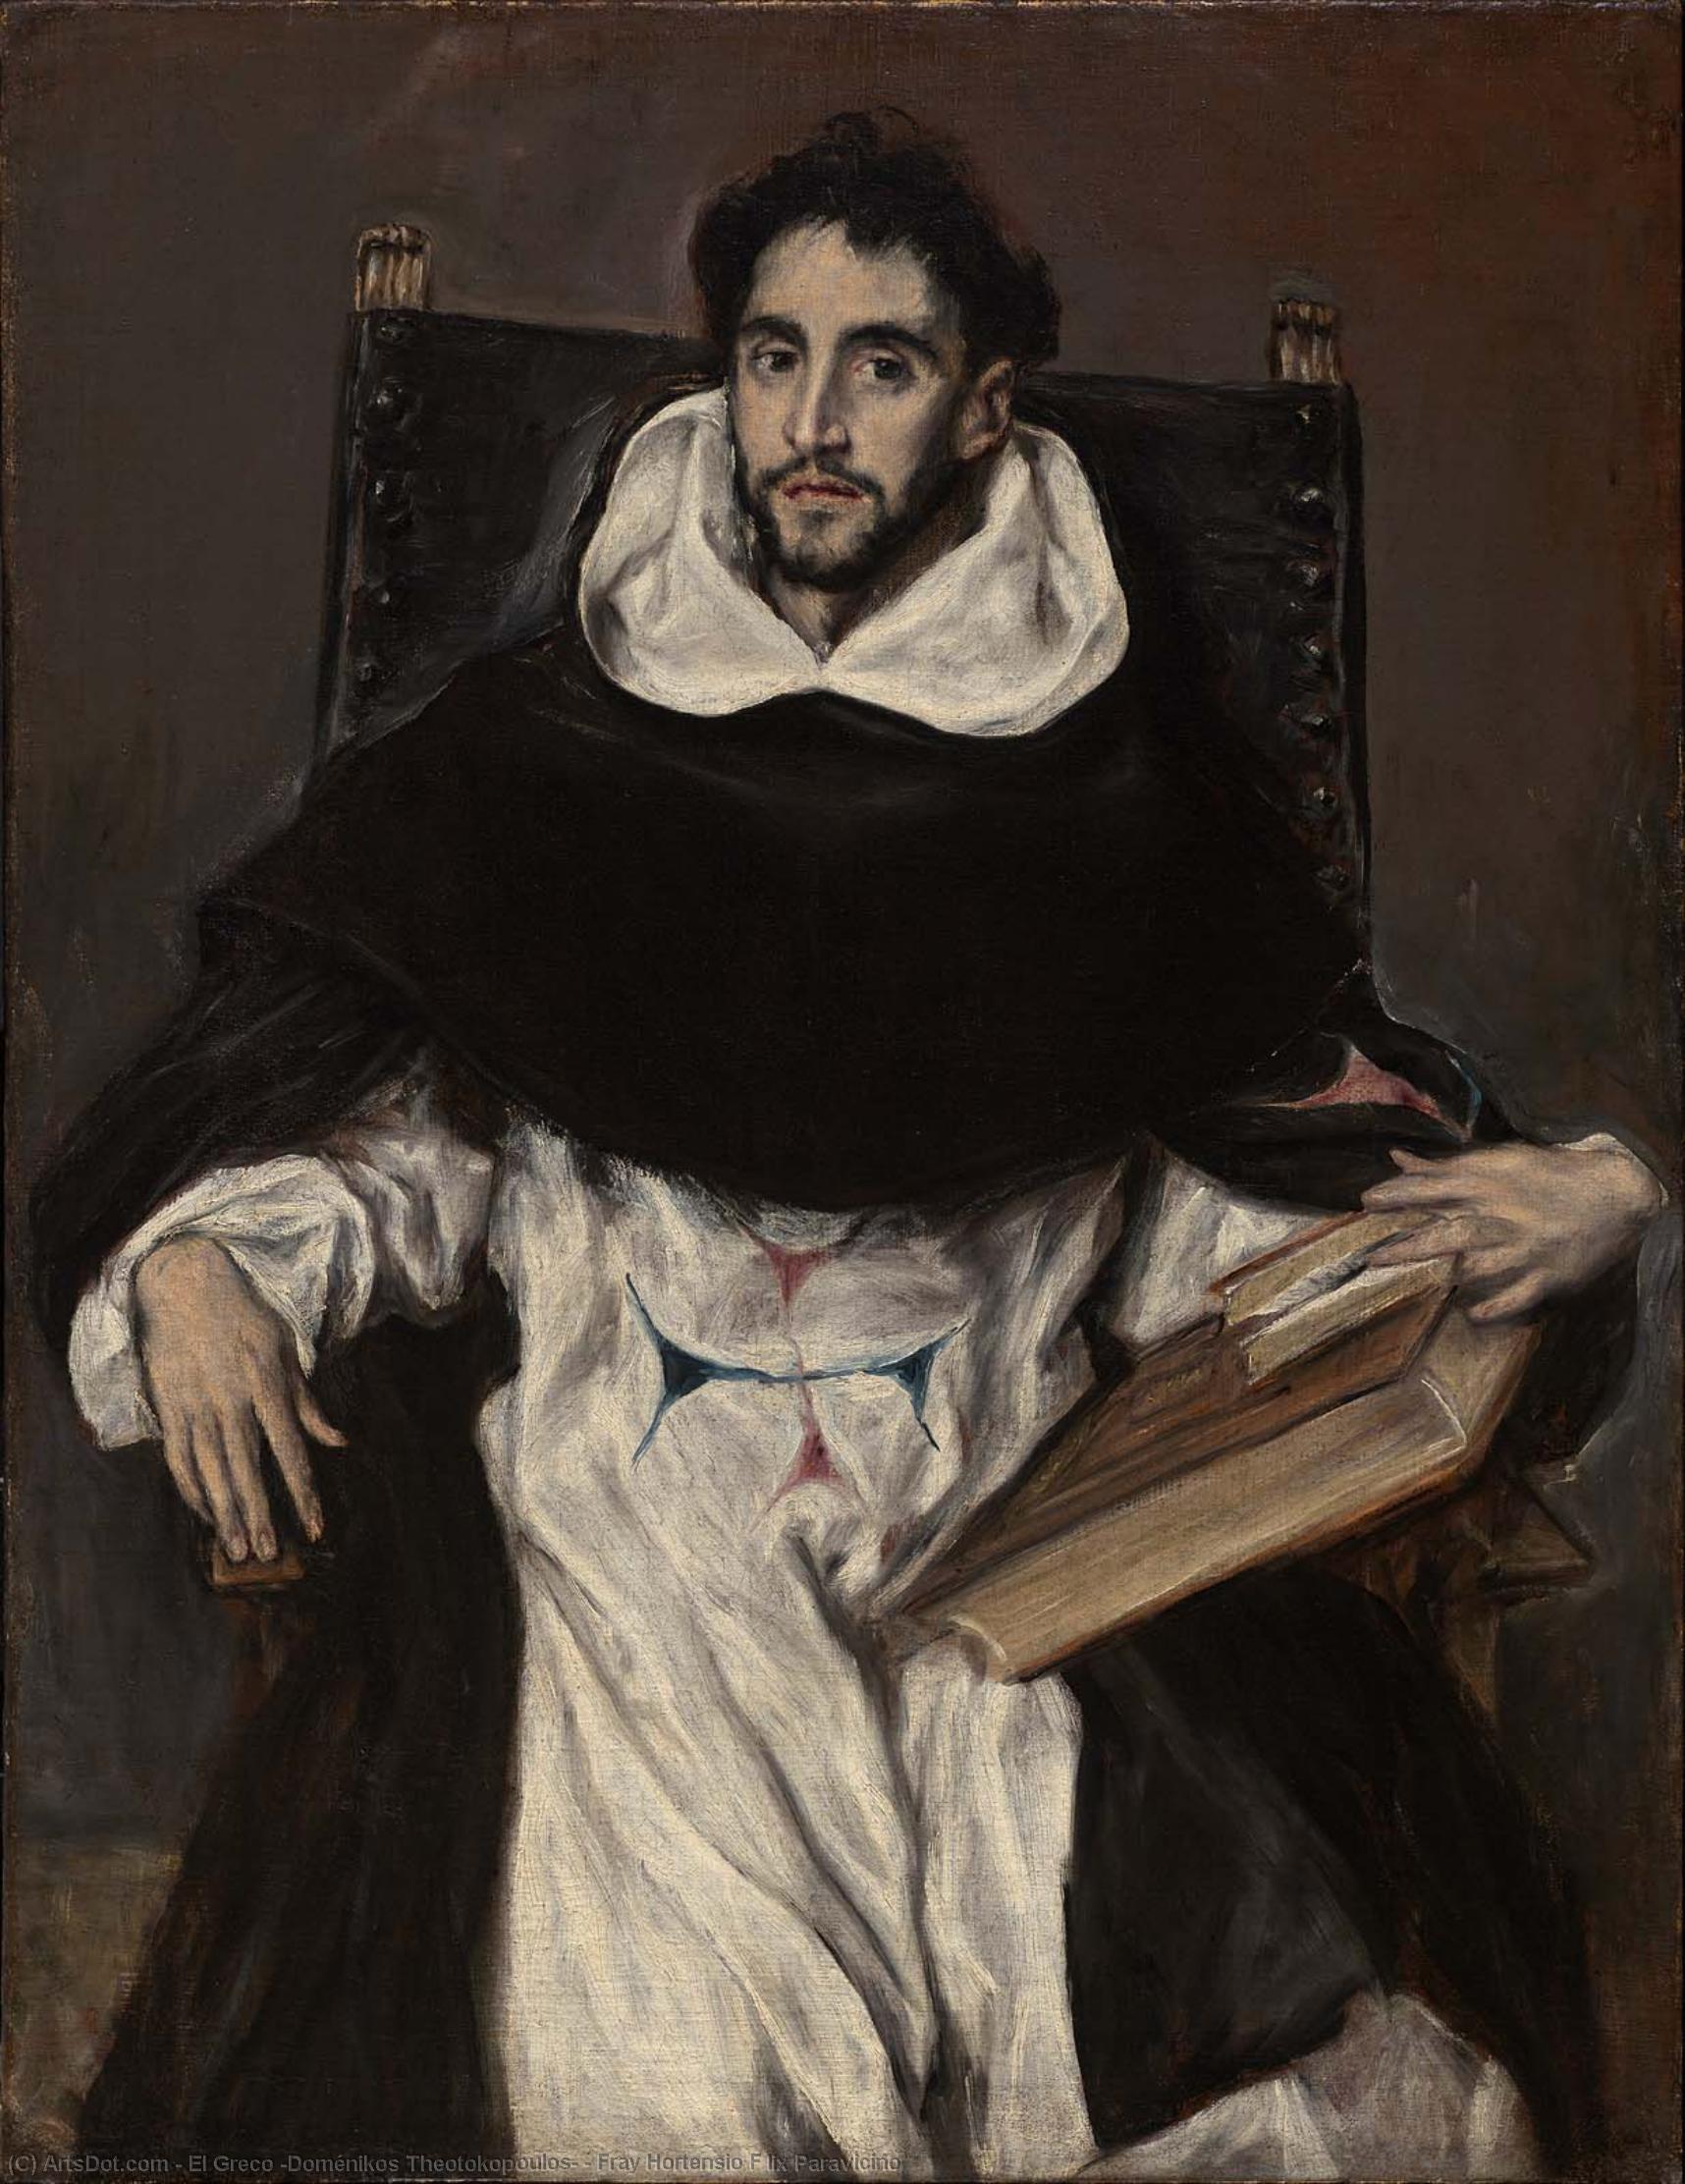 WikiOO.org - Encyclopedia of Fine Arts - Malba, Artwork El Greco (Doménikos Theotokopoulos) - Fray Hortensio F lix Paravicino